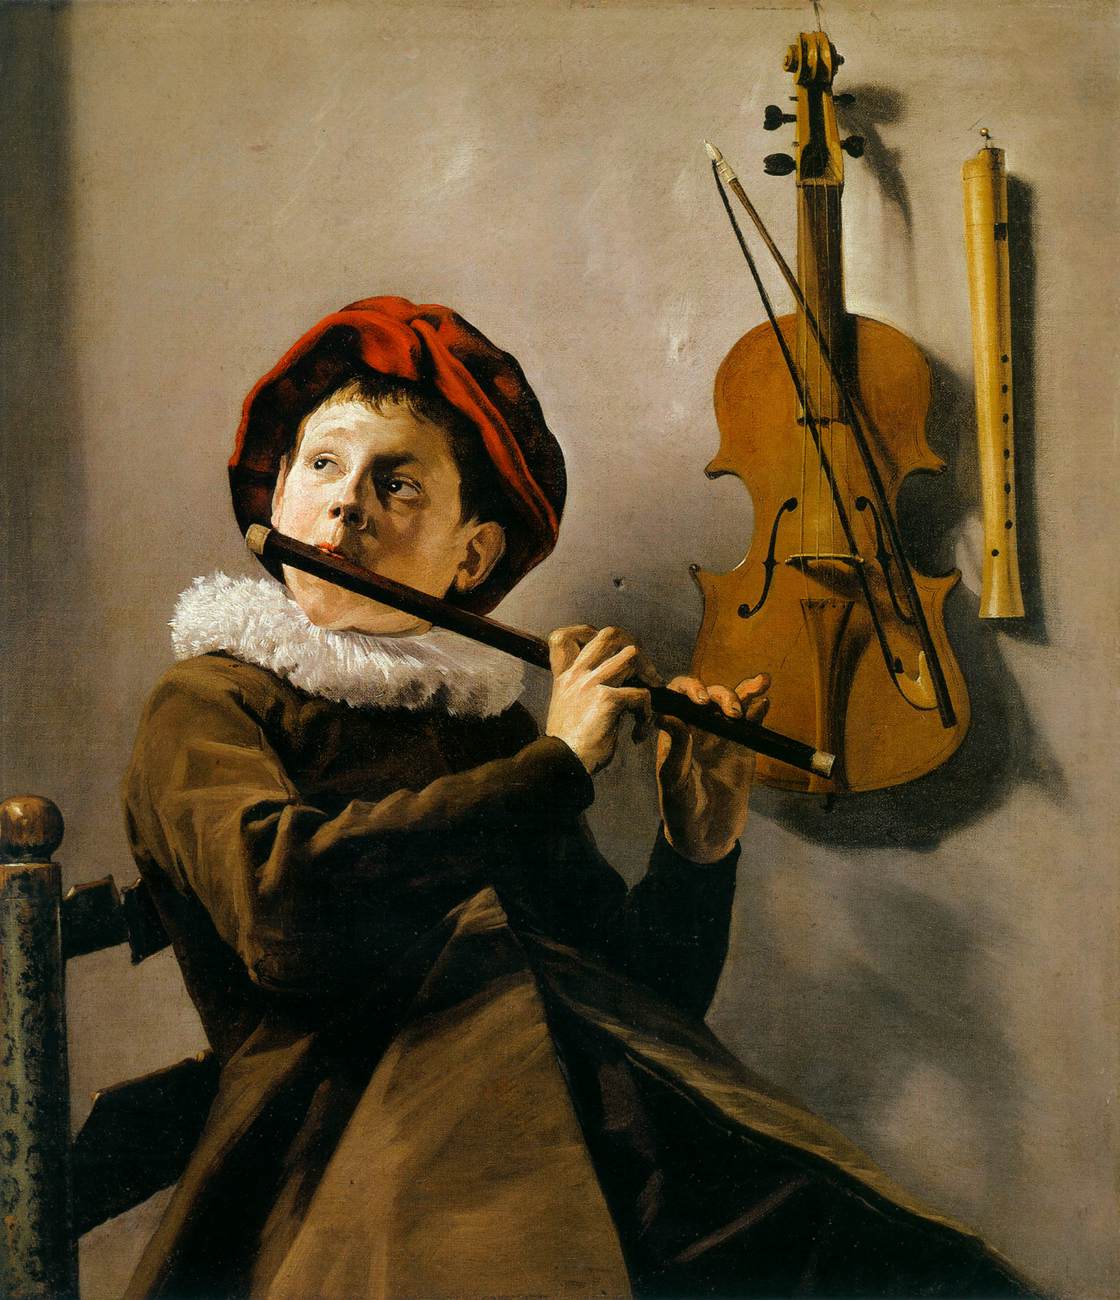 Garçon jouant une flûte